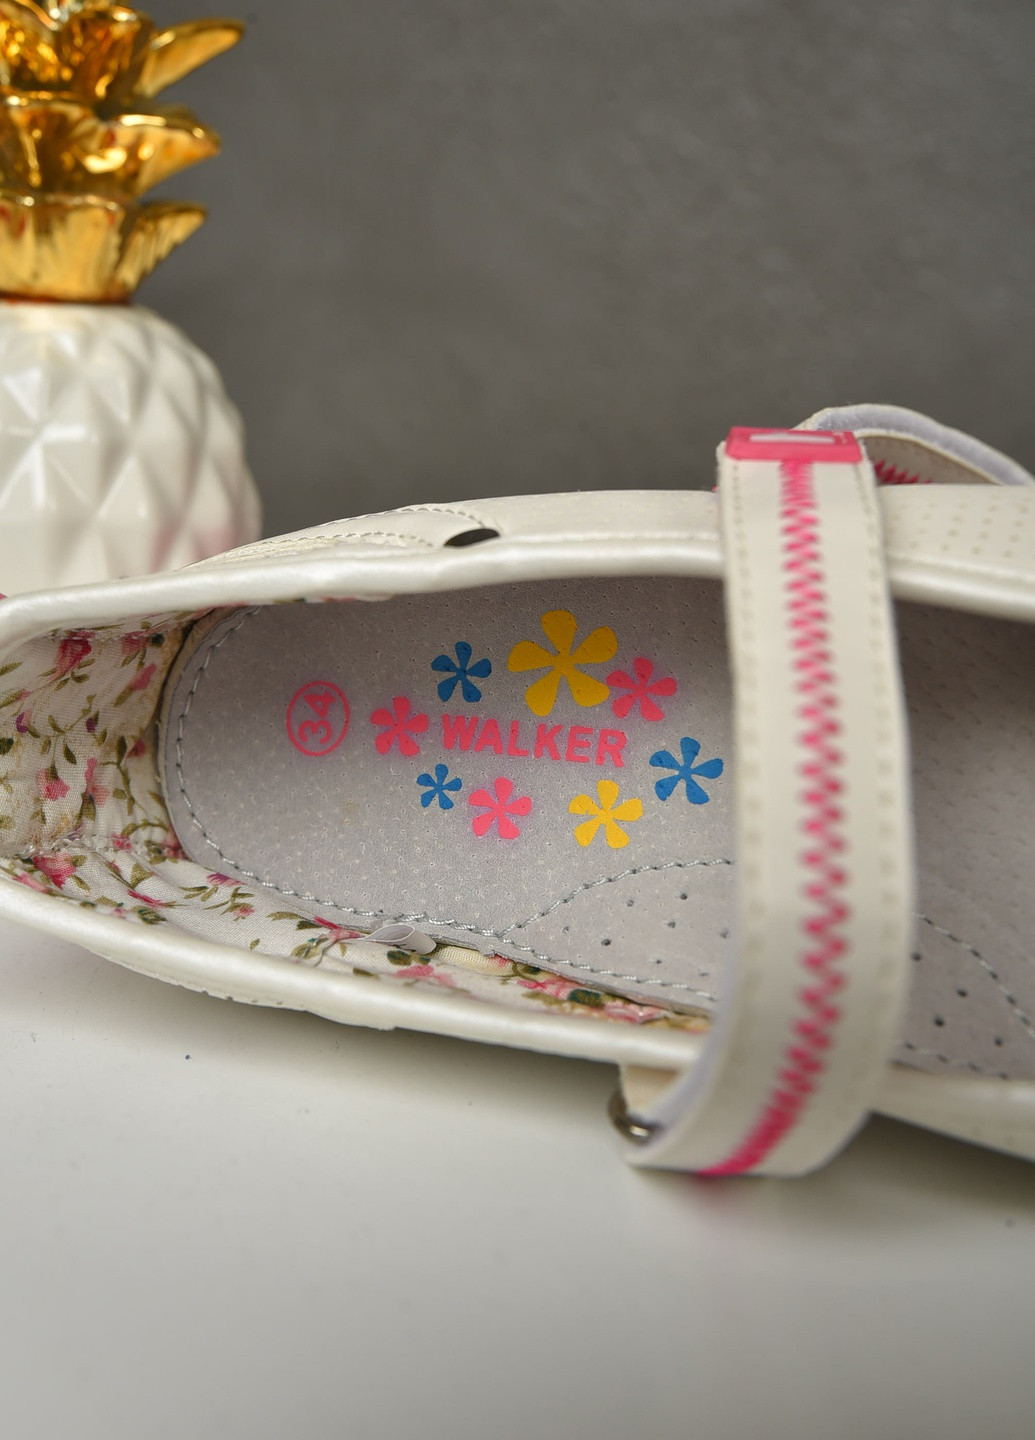 Белые туфли детские девочка белого цвета с розовой вставкой без шнурков Let's Shop